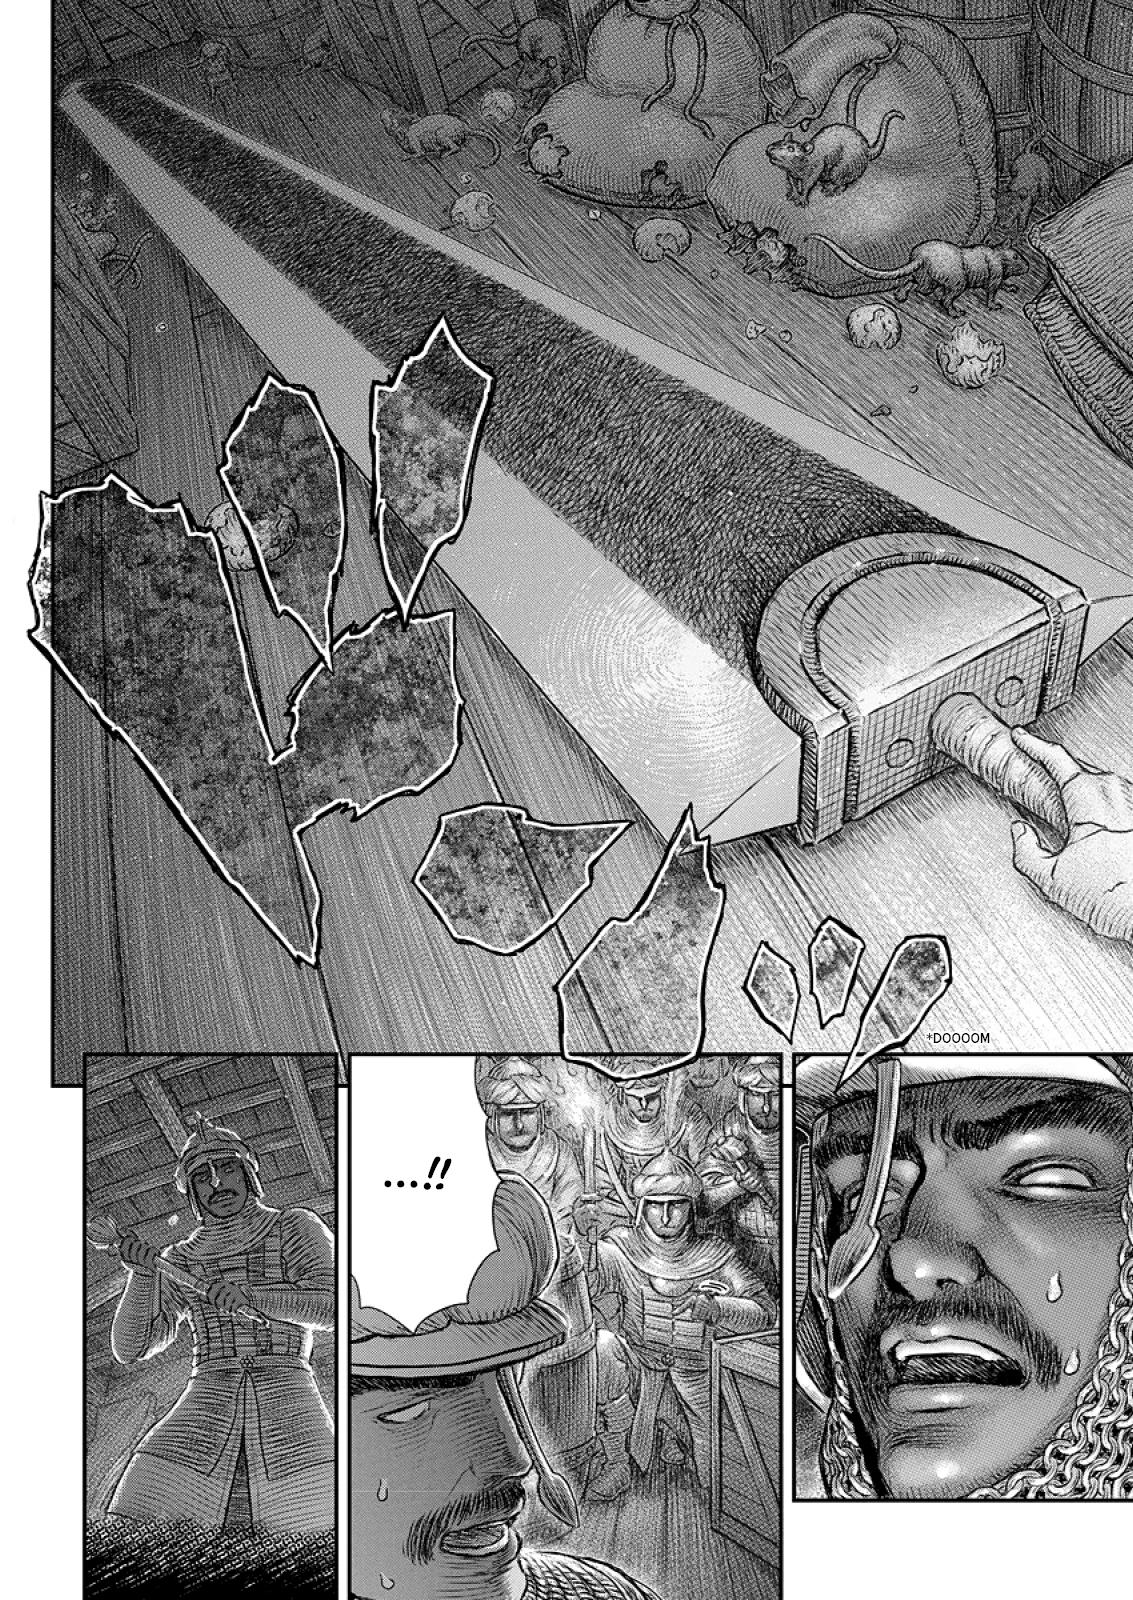 Berserk Manga Chapter 374 image 15